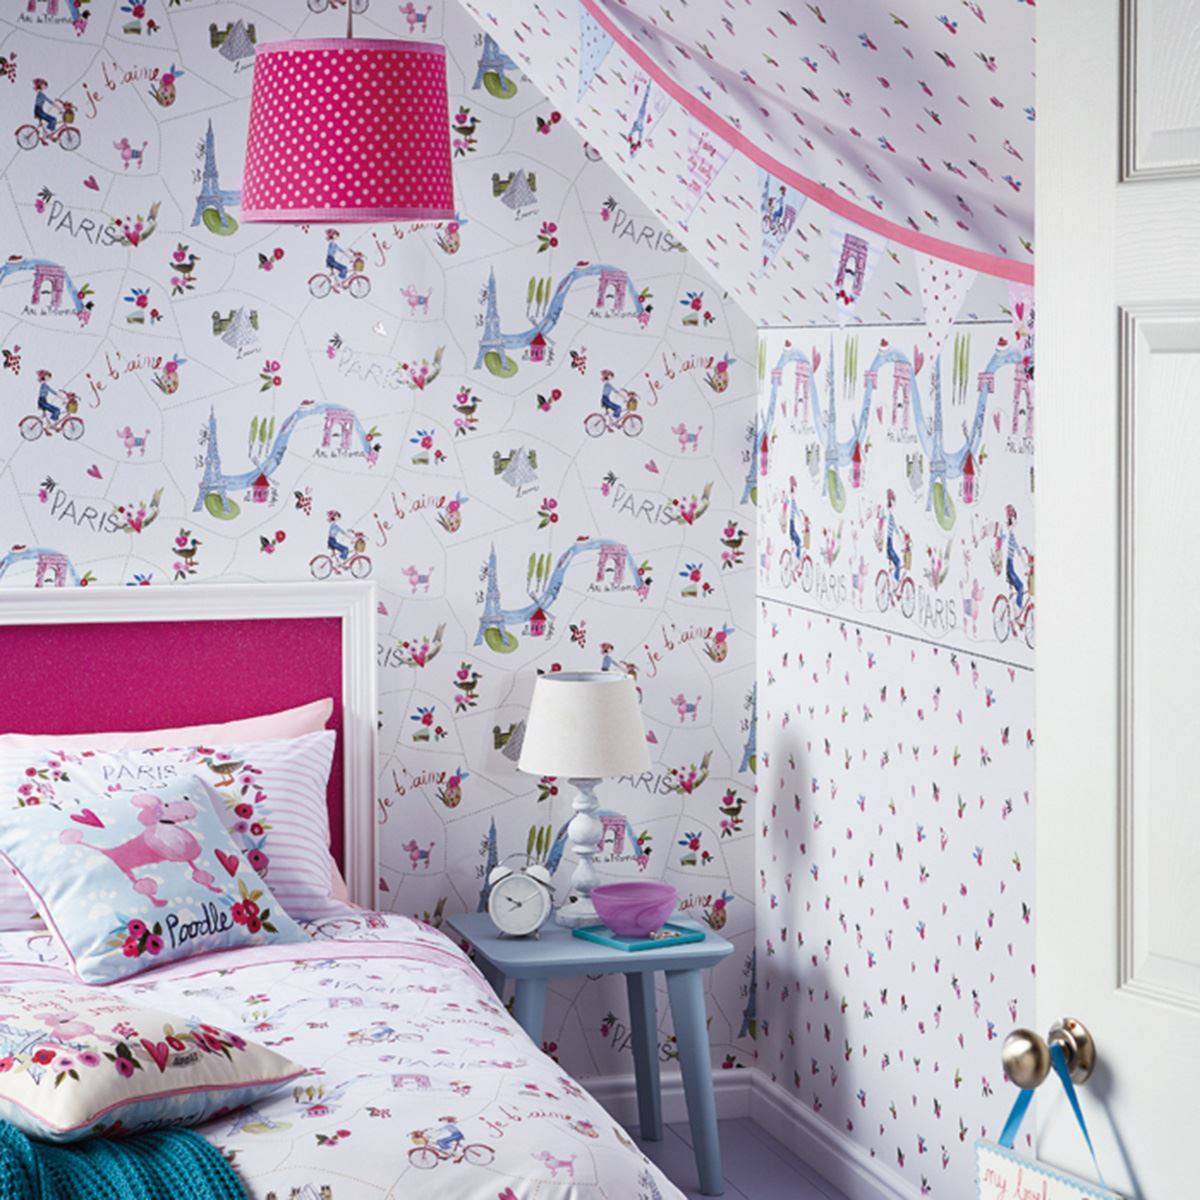 Girl Bedroom Wallpaper
 GIRLS WALLPAPER THEMED BEDROOM UNICORN STARS HEART GLITTER